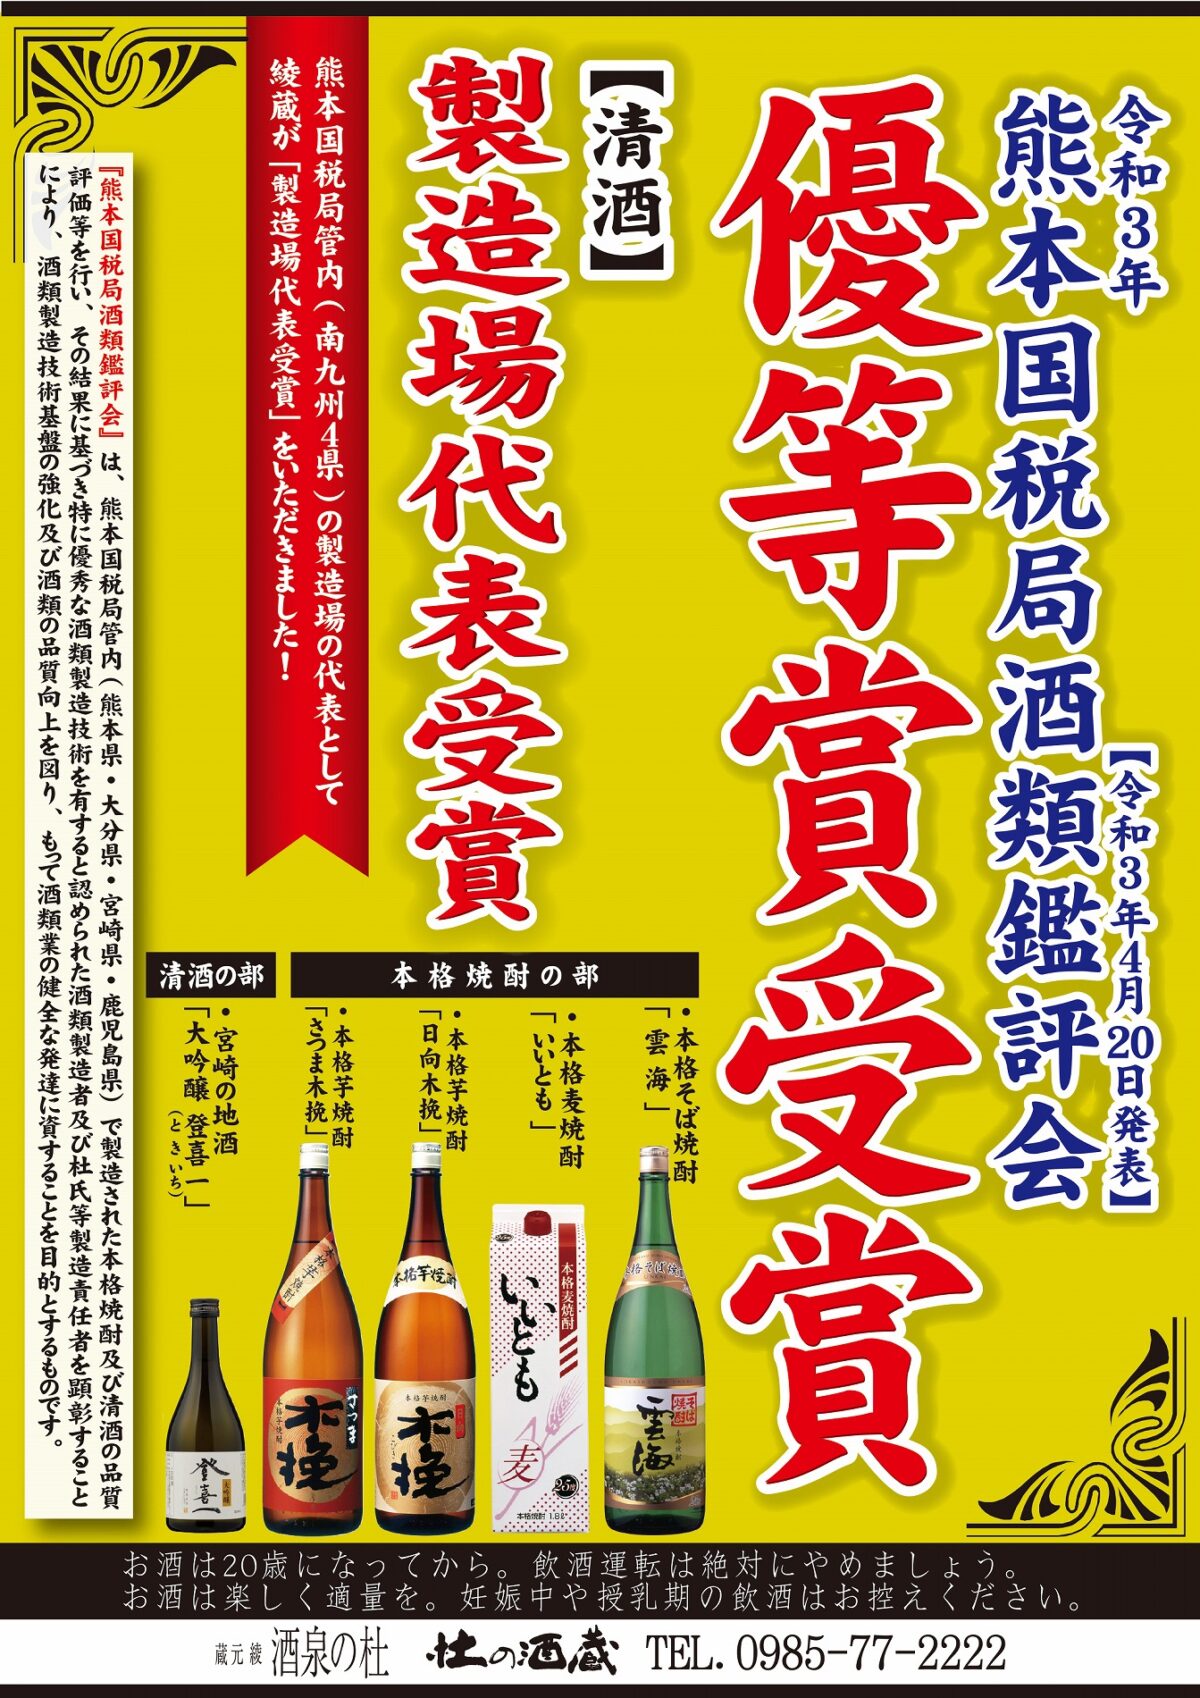 ｢令和3年熊本国税局酒類鑑評会｣につきまして 2021、雲海酒造株式会社、酒泉の杜、売店